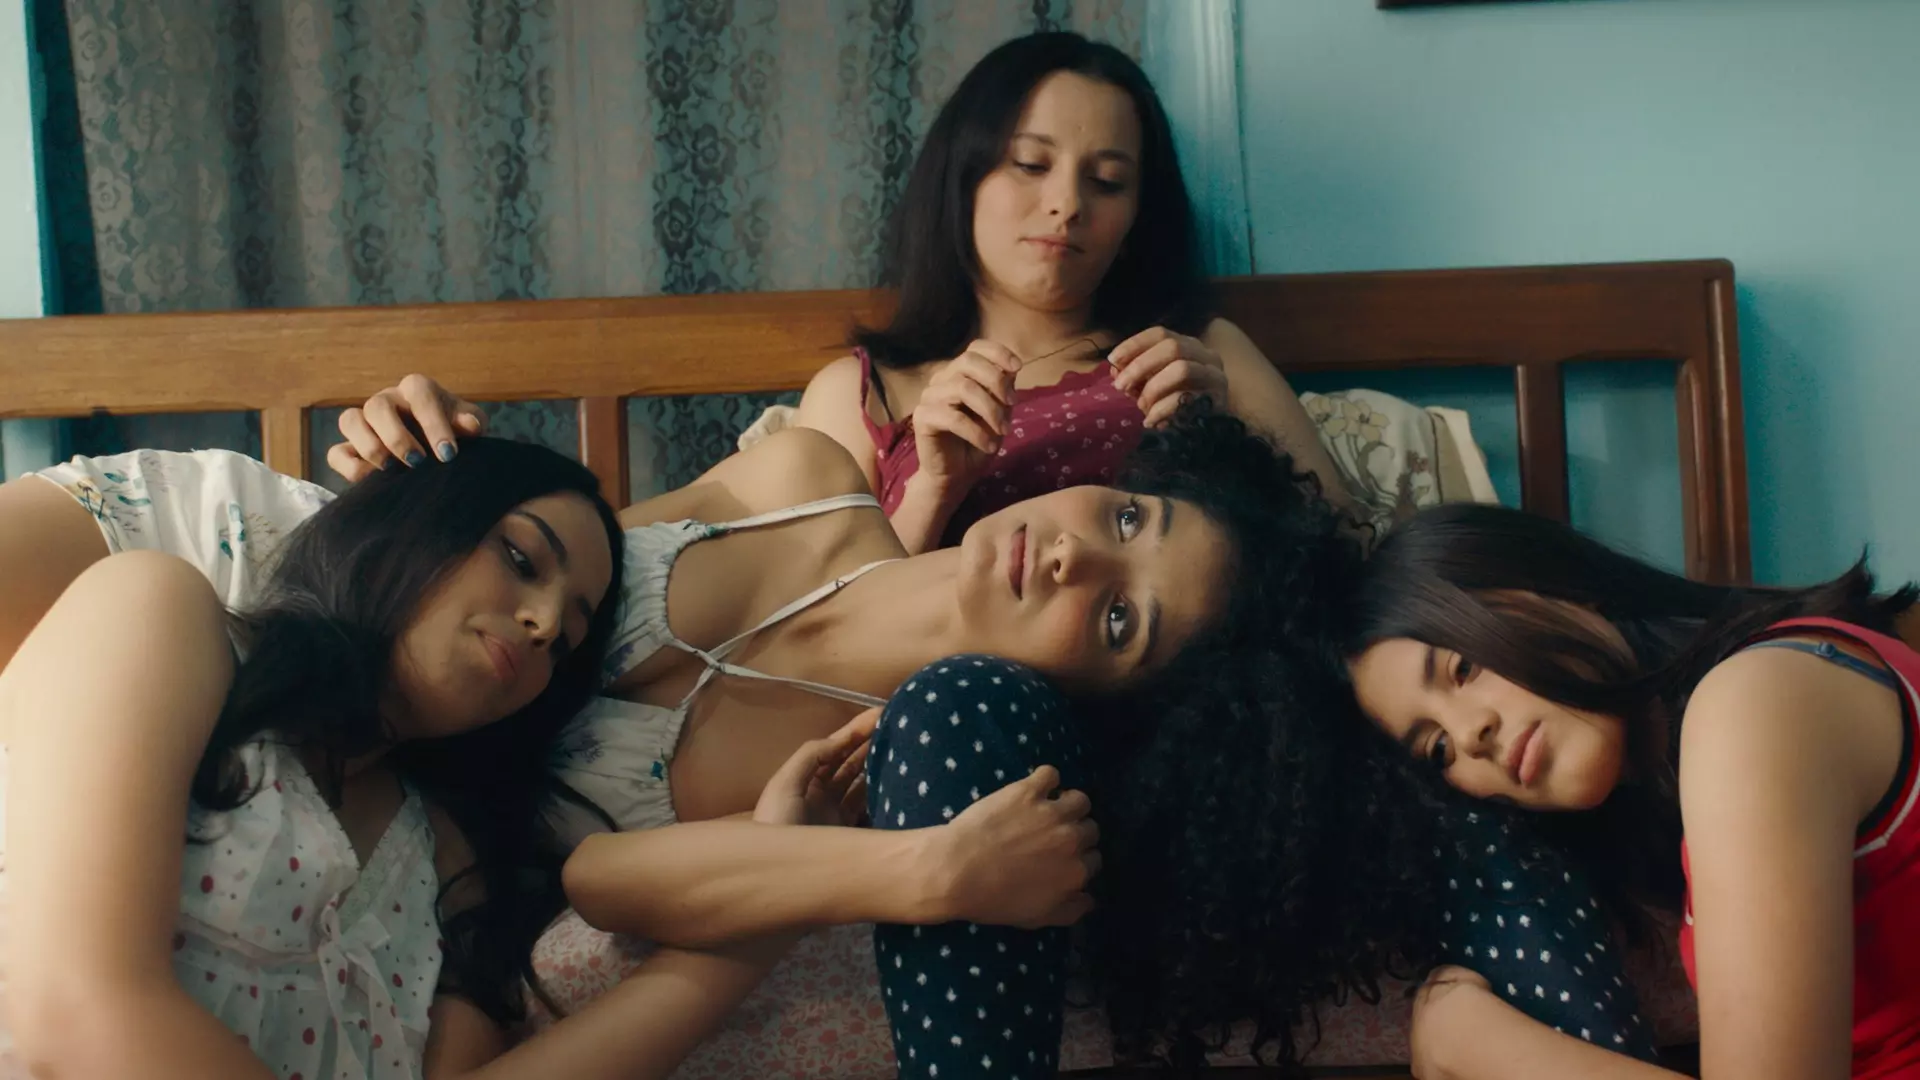 Fire unge tunisiske kvinner lener seg over hverandre i en seng. 